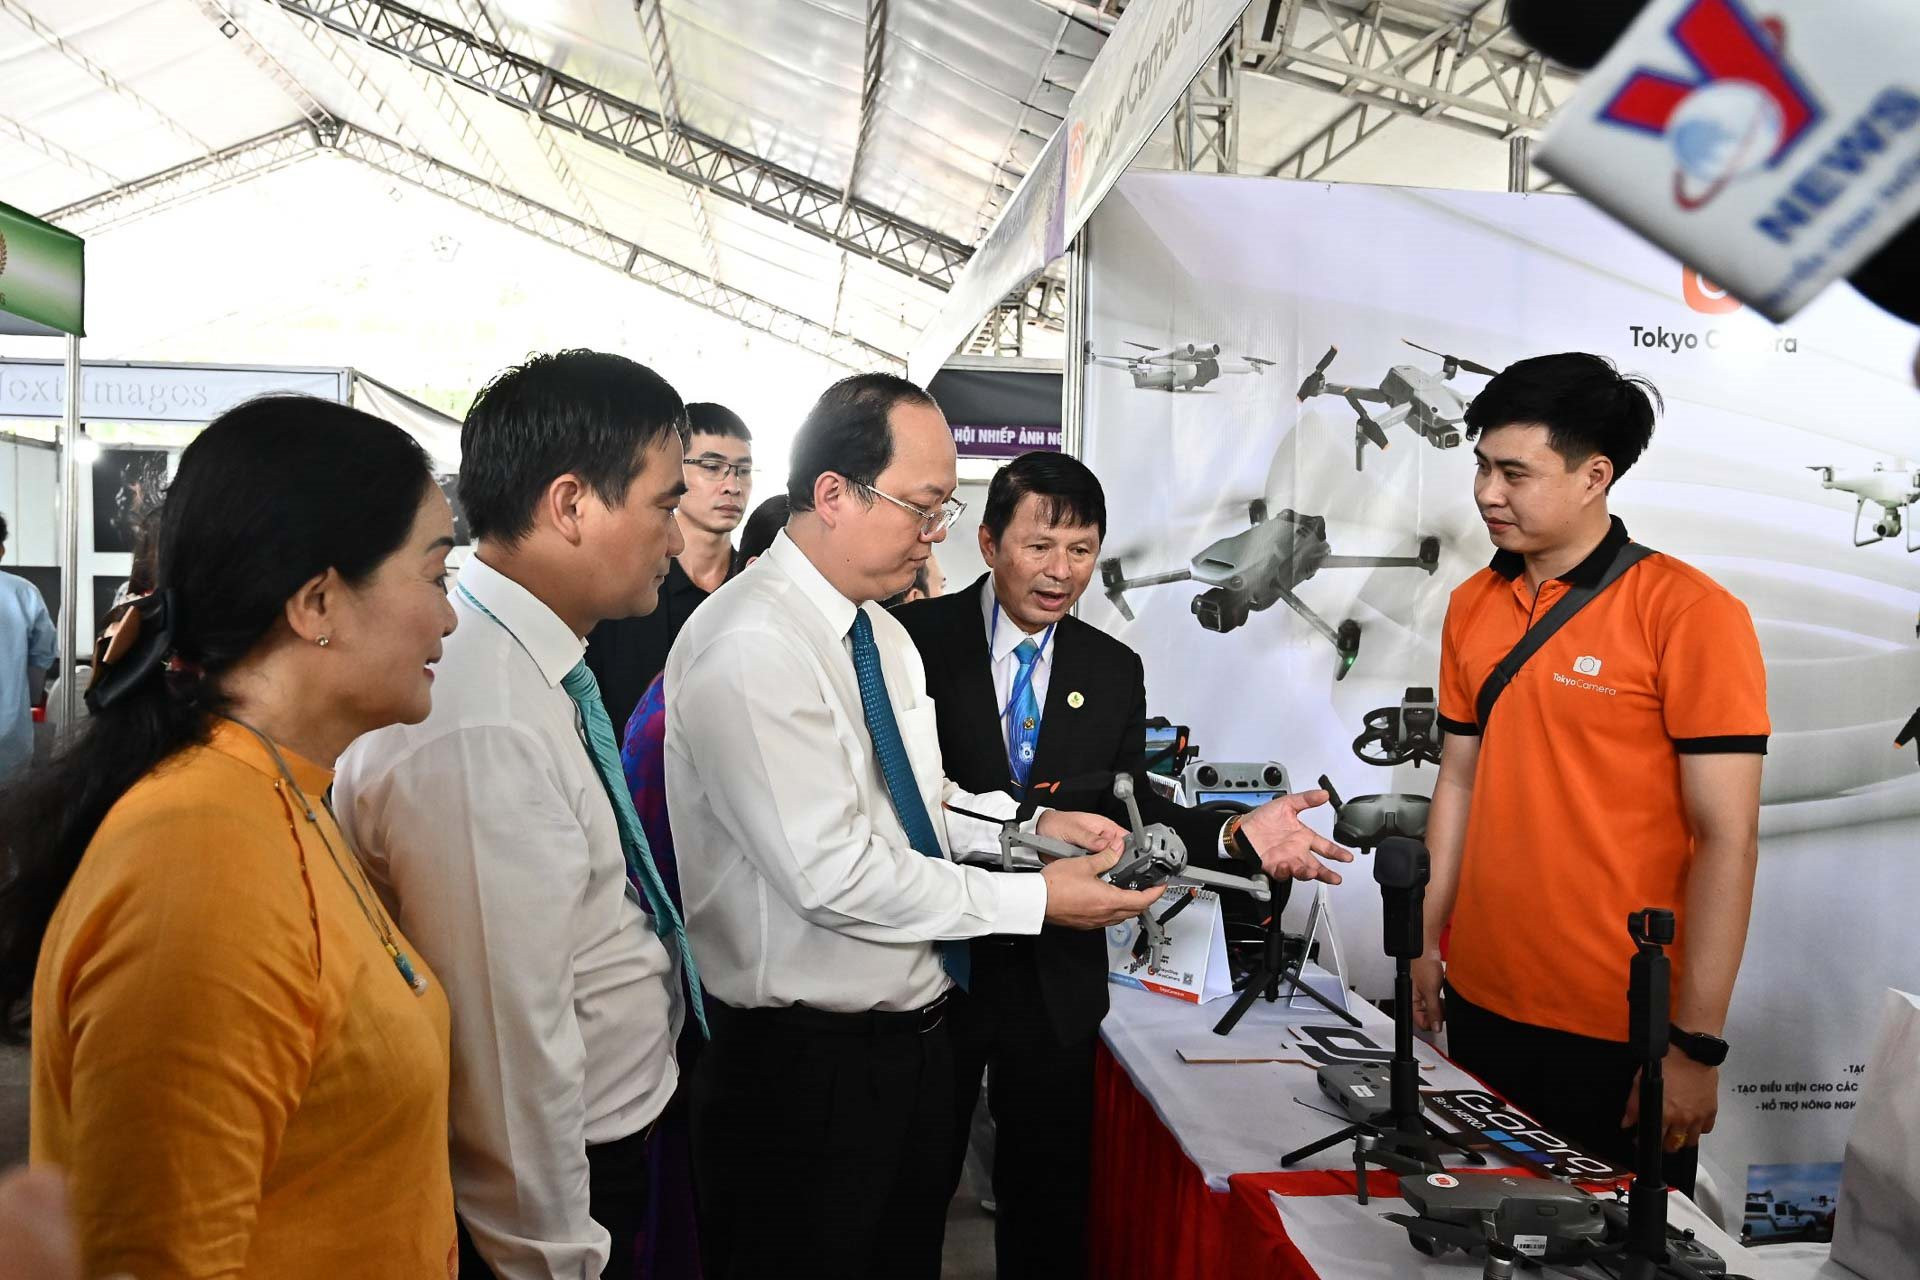 Phó bí thư Thành ủy TP.HCM Nguyễn Hồ Hải tham qua gian hàng thiết bị chụp ảnh của TOKYOCAMERA